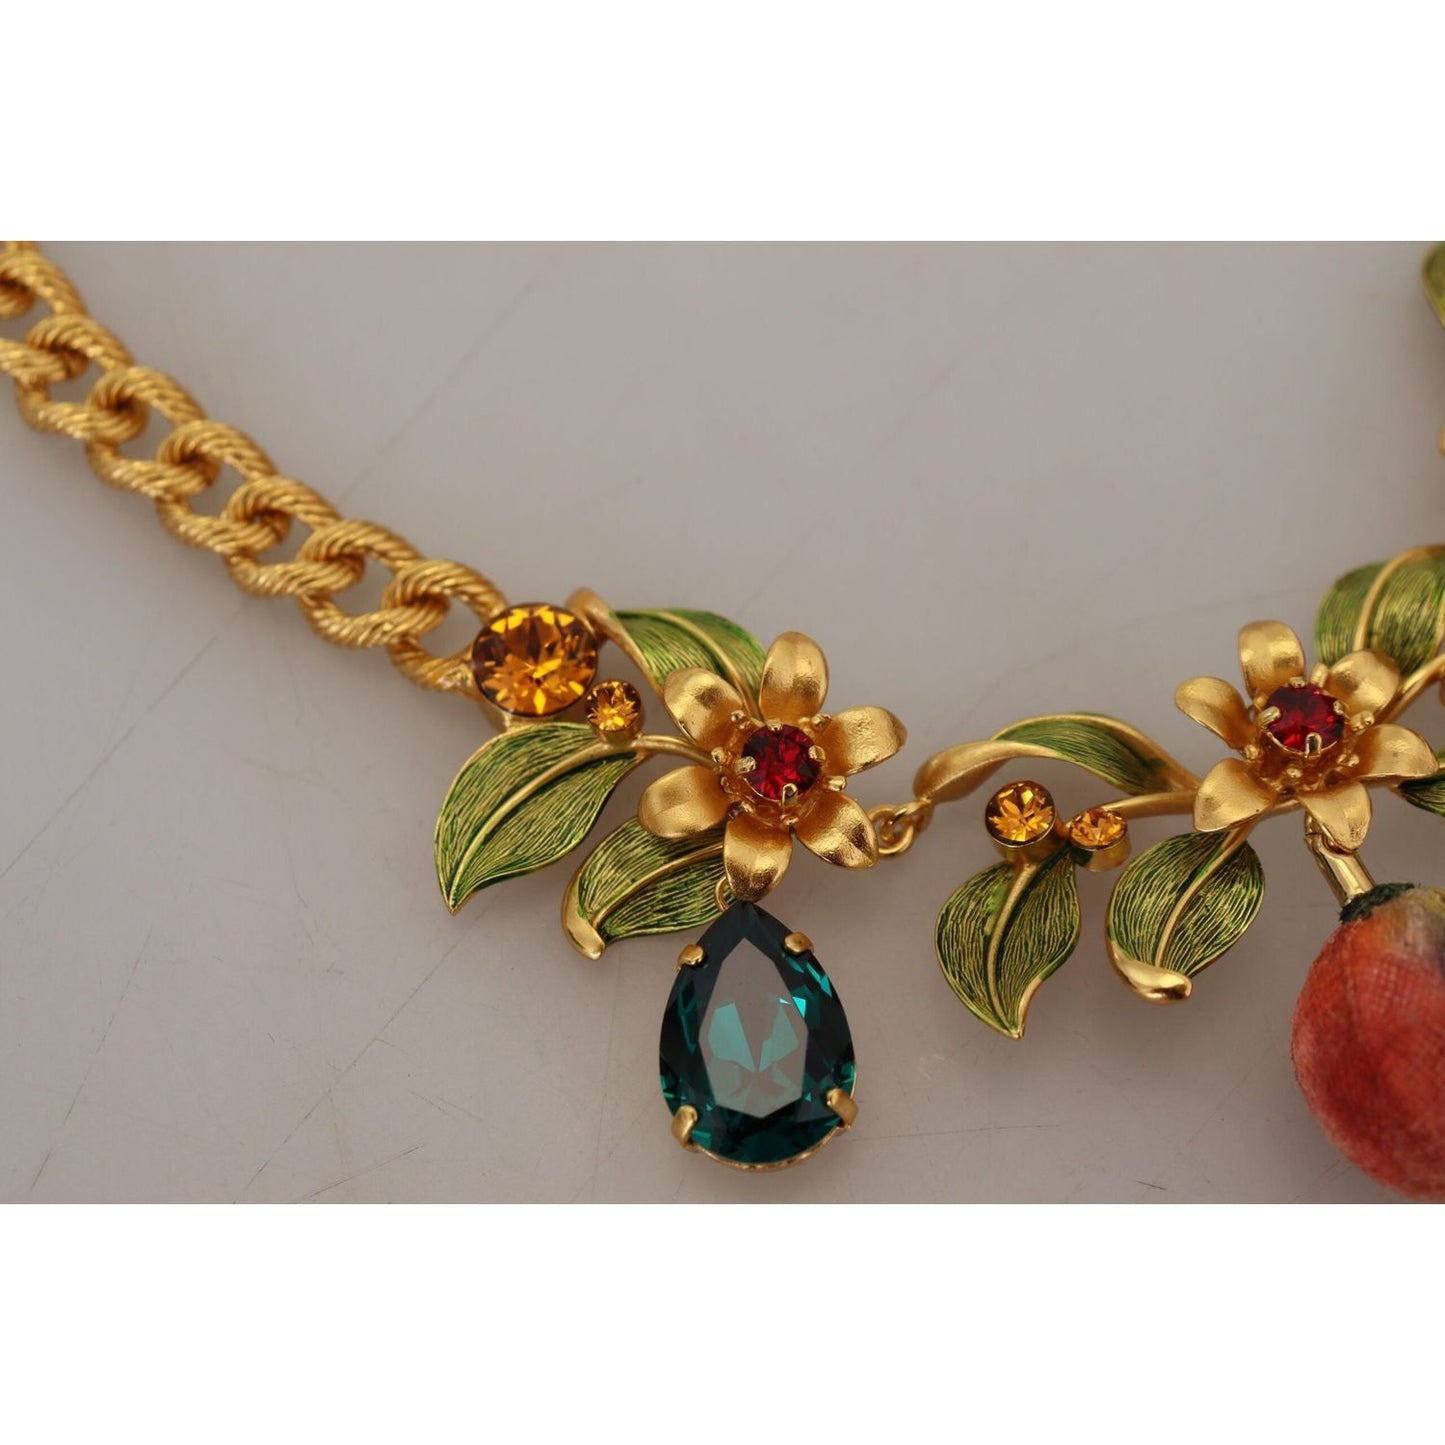 Dolce & Gabbana Elegant Floral Fruit Motif Gold Necklace gold-brass-crystal-logo-fruit-floral-statement-necklace IMG_7477-scaled-84d7ad78-c0b.jpg